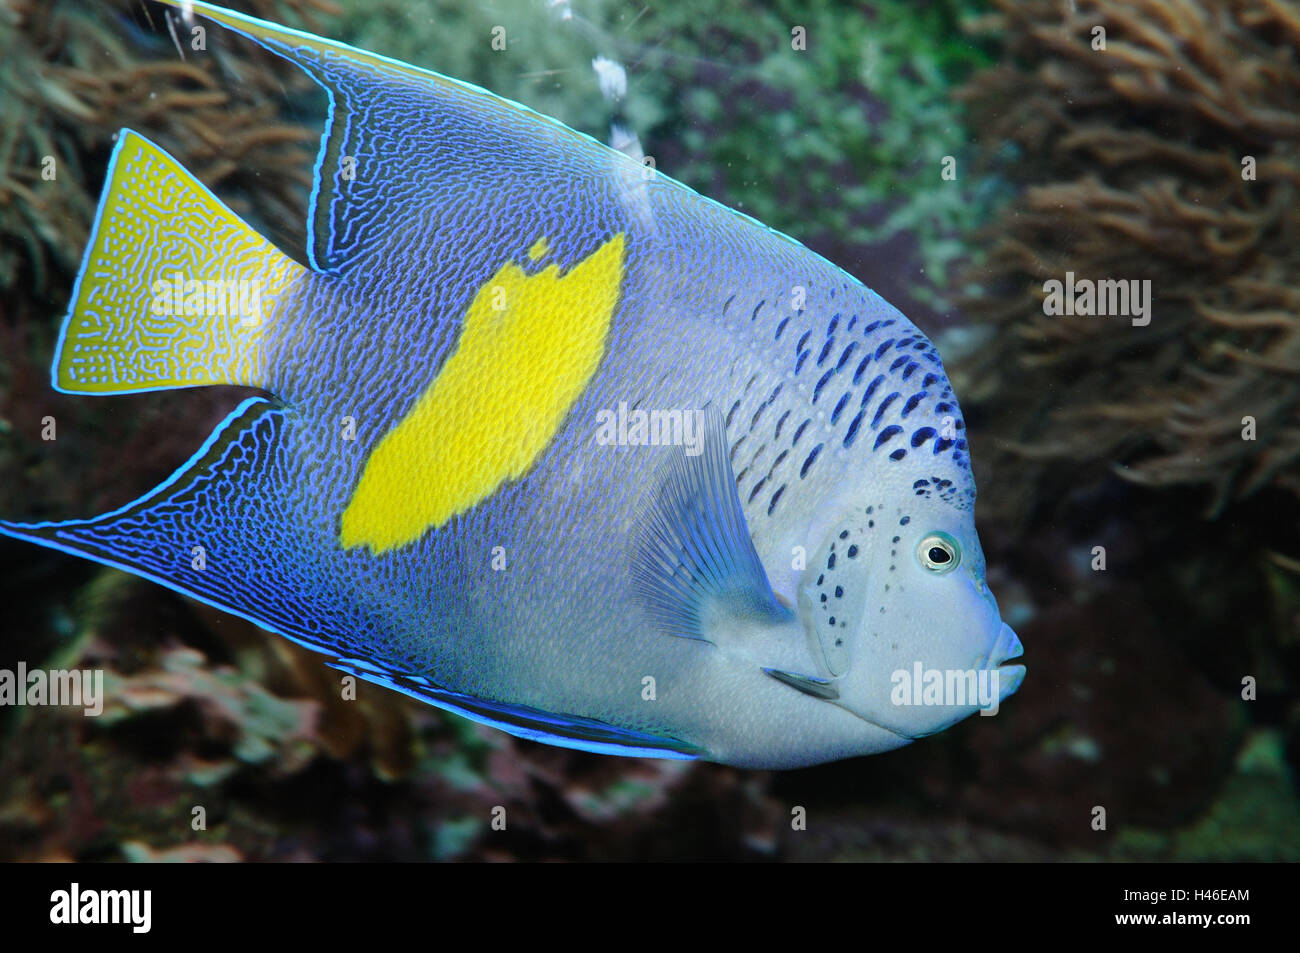 Halfmoon angelfish, Pomacanthus maculosus, underwater, side view, swimming, Stock Photo